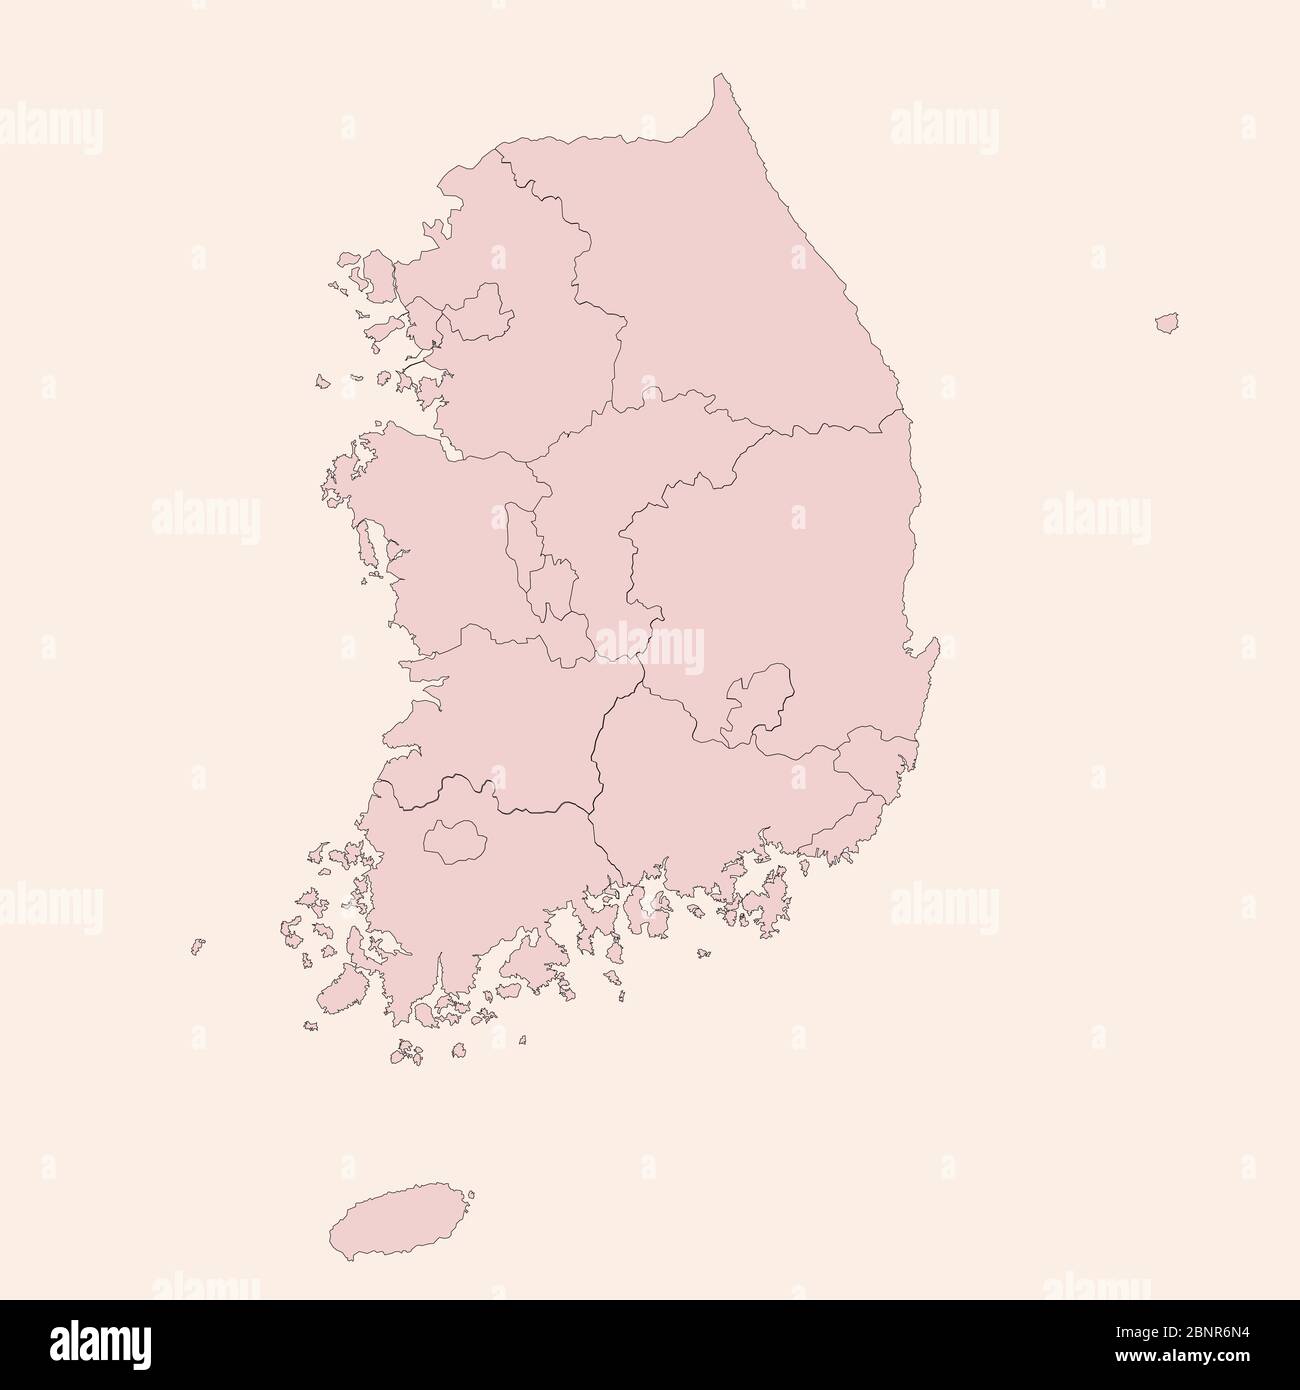 South Korea Map: Hàn Quốc với các thành phố, thị trấn và các địa điểm phổ biến sẽ khiến bạn bối rối? Hãy tìm hiểu bản đồ Hàn Quốc chi tiết để bạn không bị lạc đường trong chuyến đi của mình. Các địa danh và cách đi lại sẽ giúp bạn có chuyến đi thoải mái và đầy thú vị.